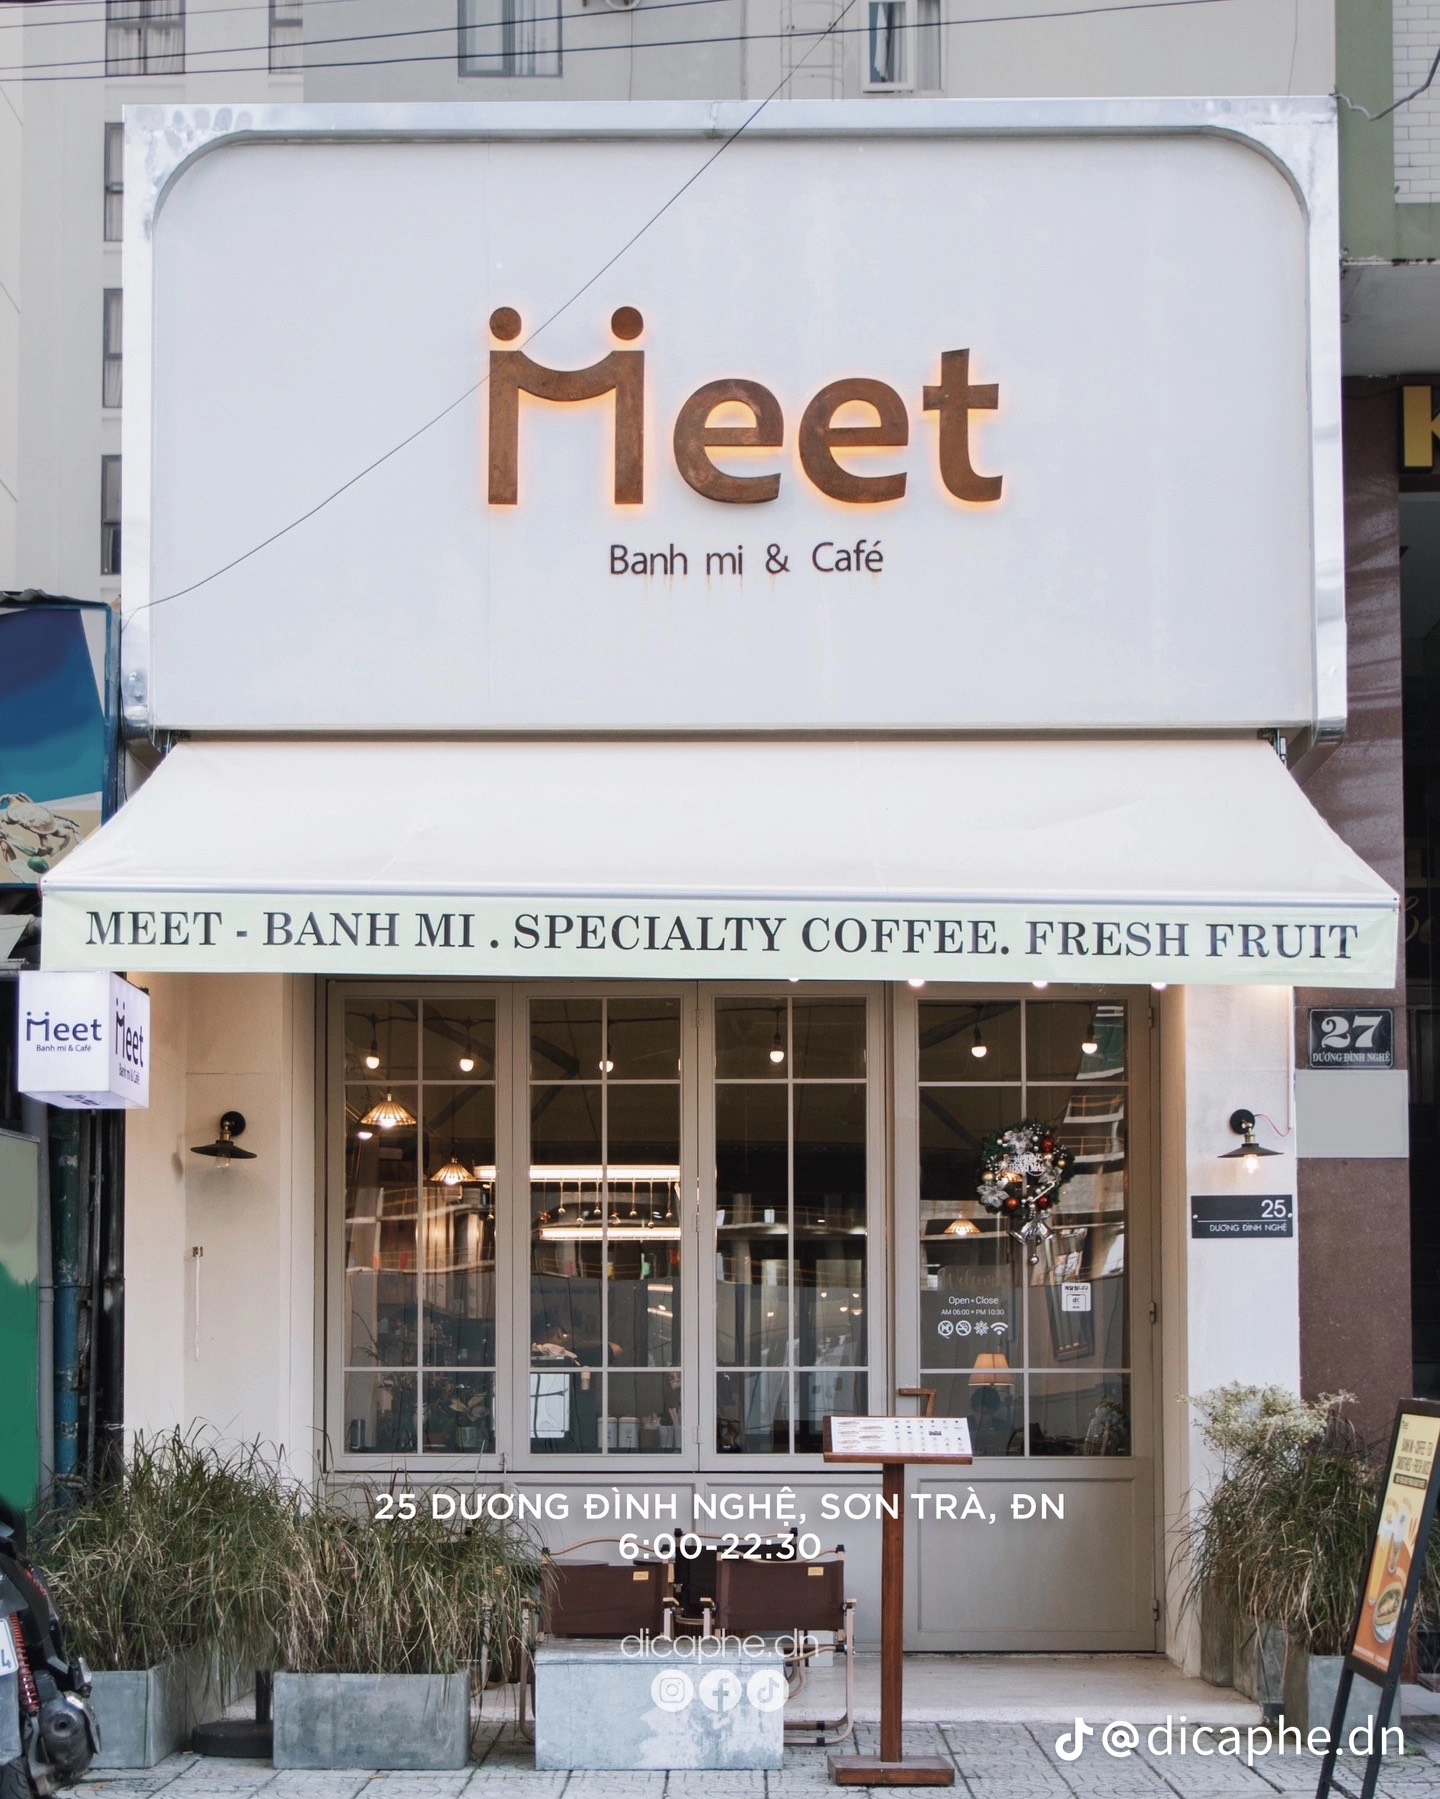 Meet Bánh mì & Coffee mang cảm giác nhẹ nhàng, xinh xắn.